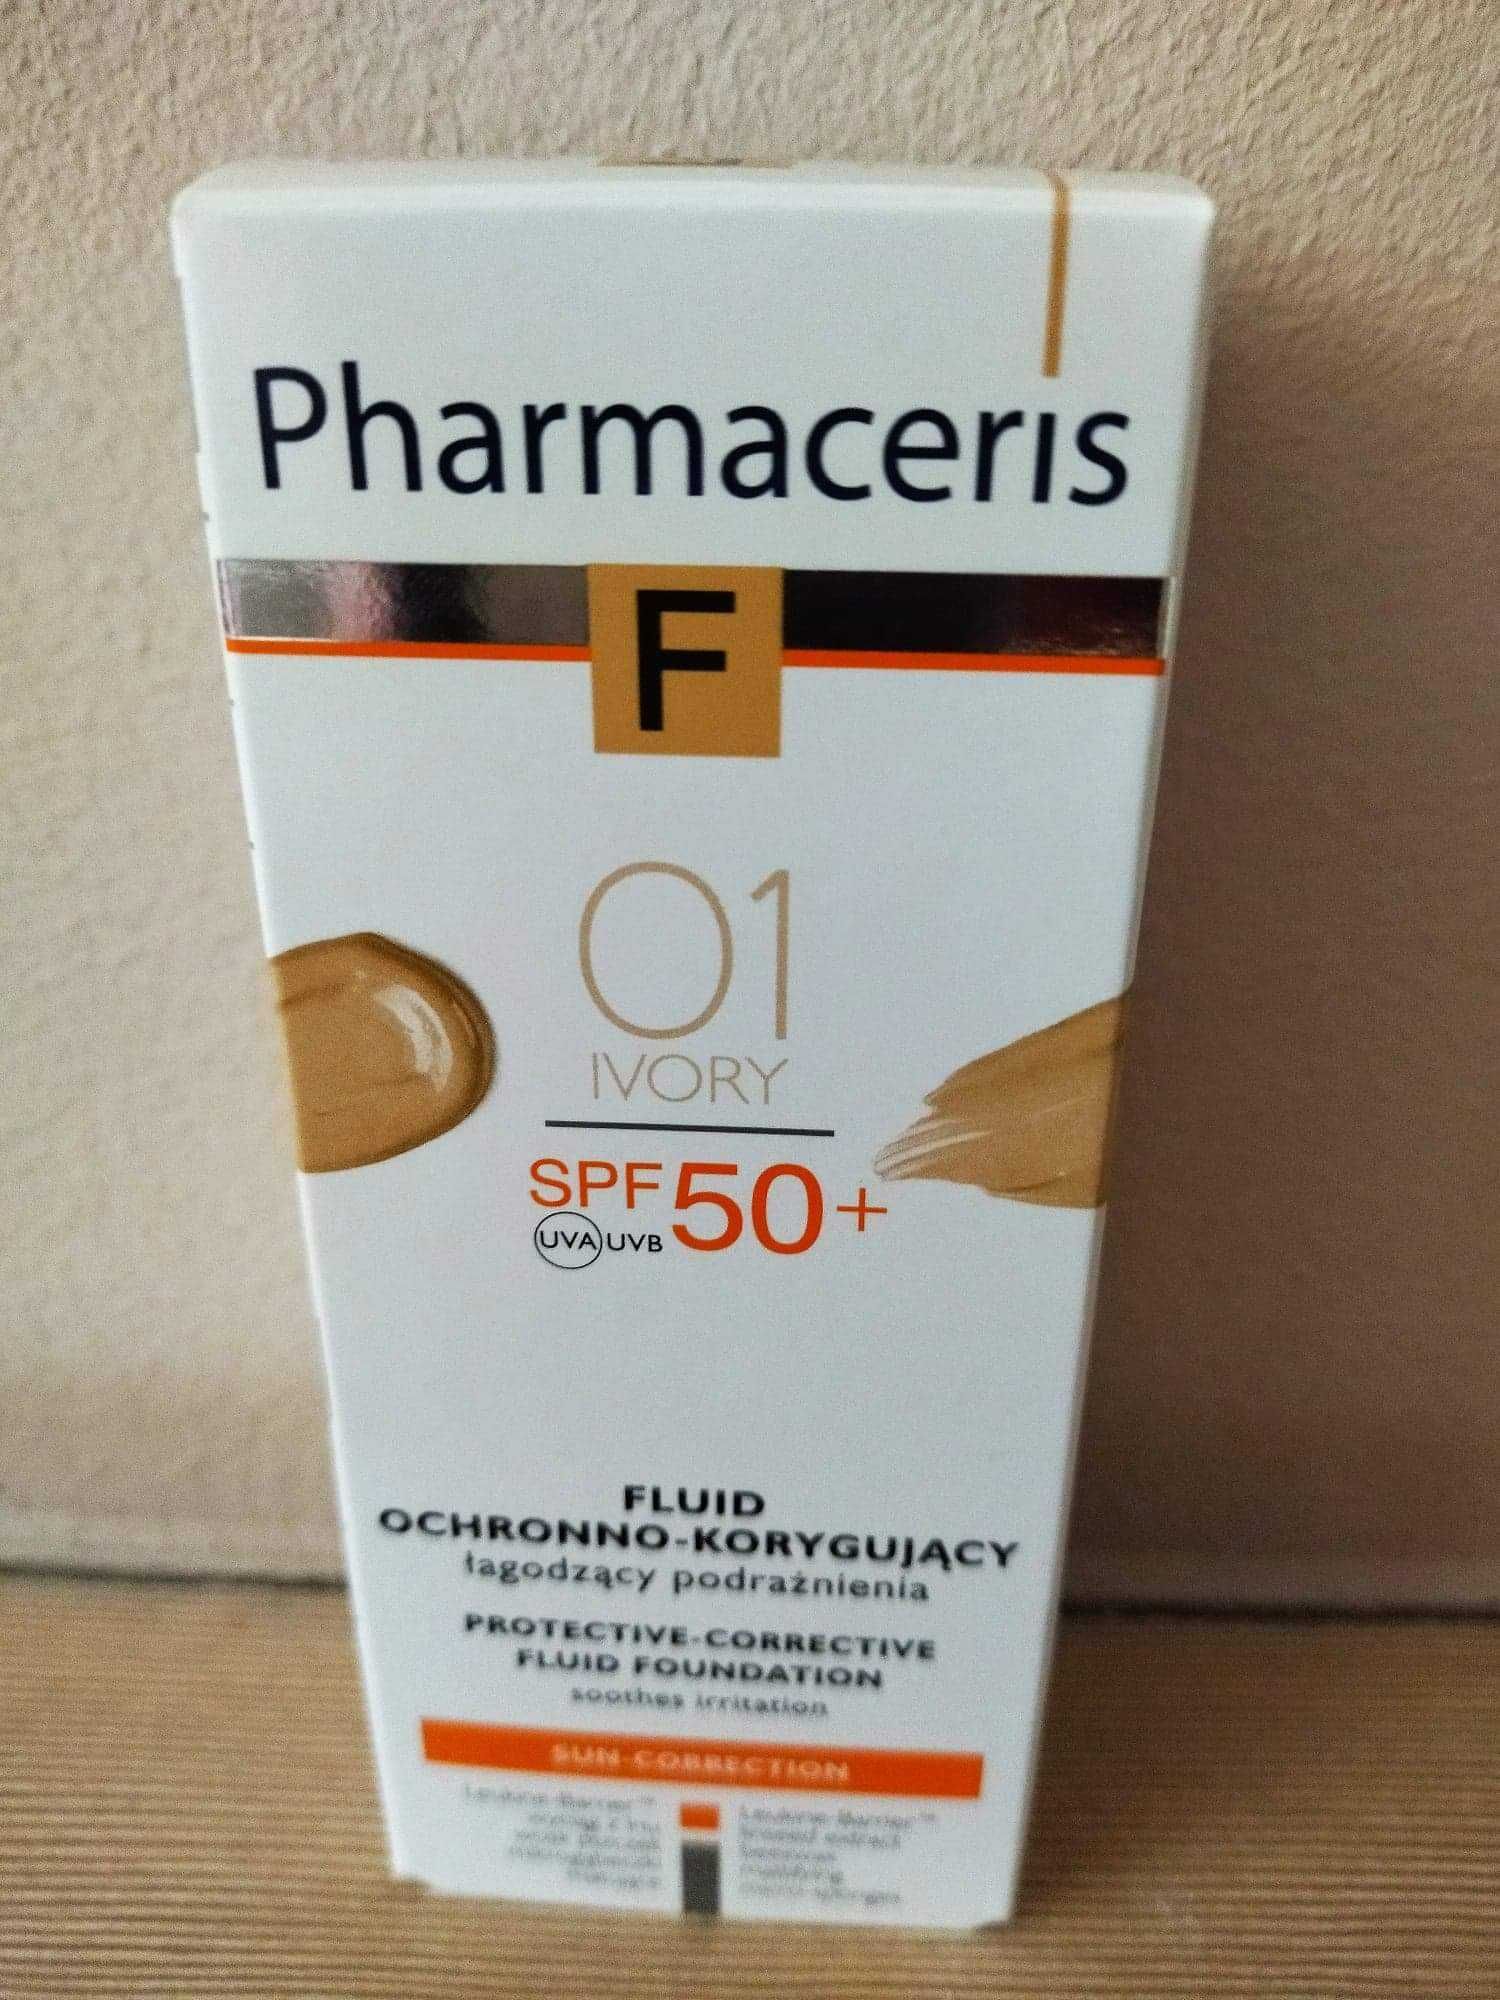 Pharmaceris F 30 ml 01 ivory
podkład korygujący z filtrem